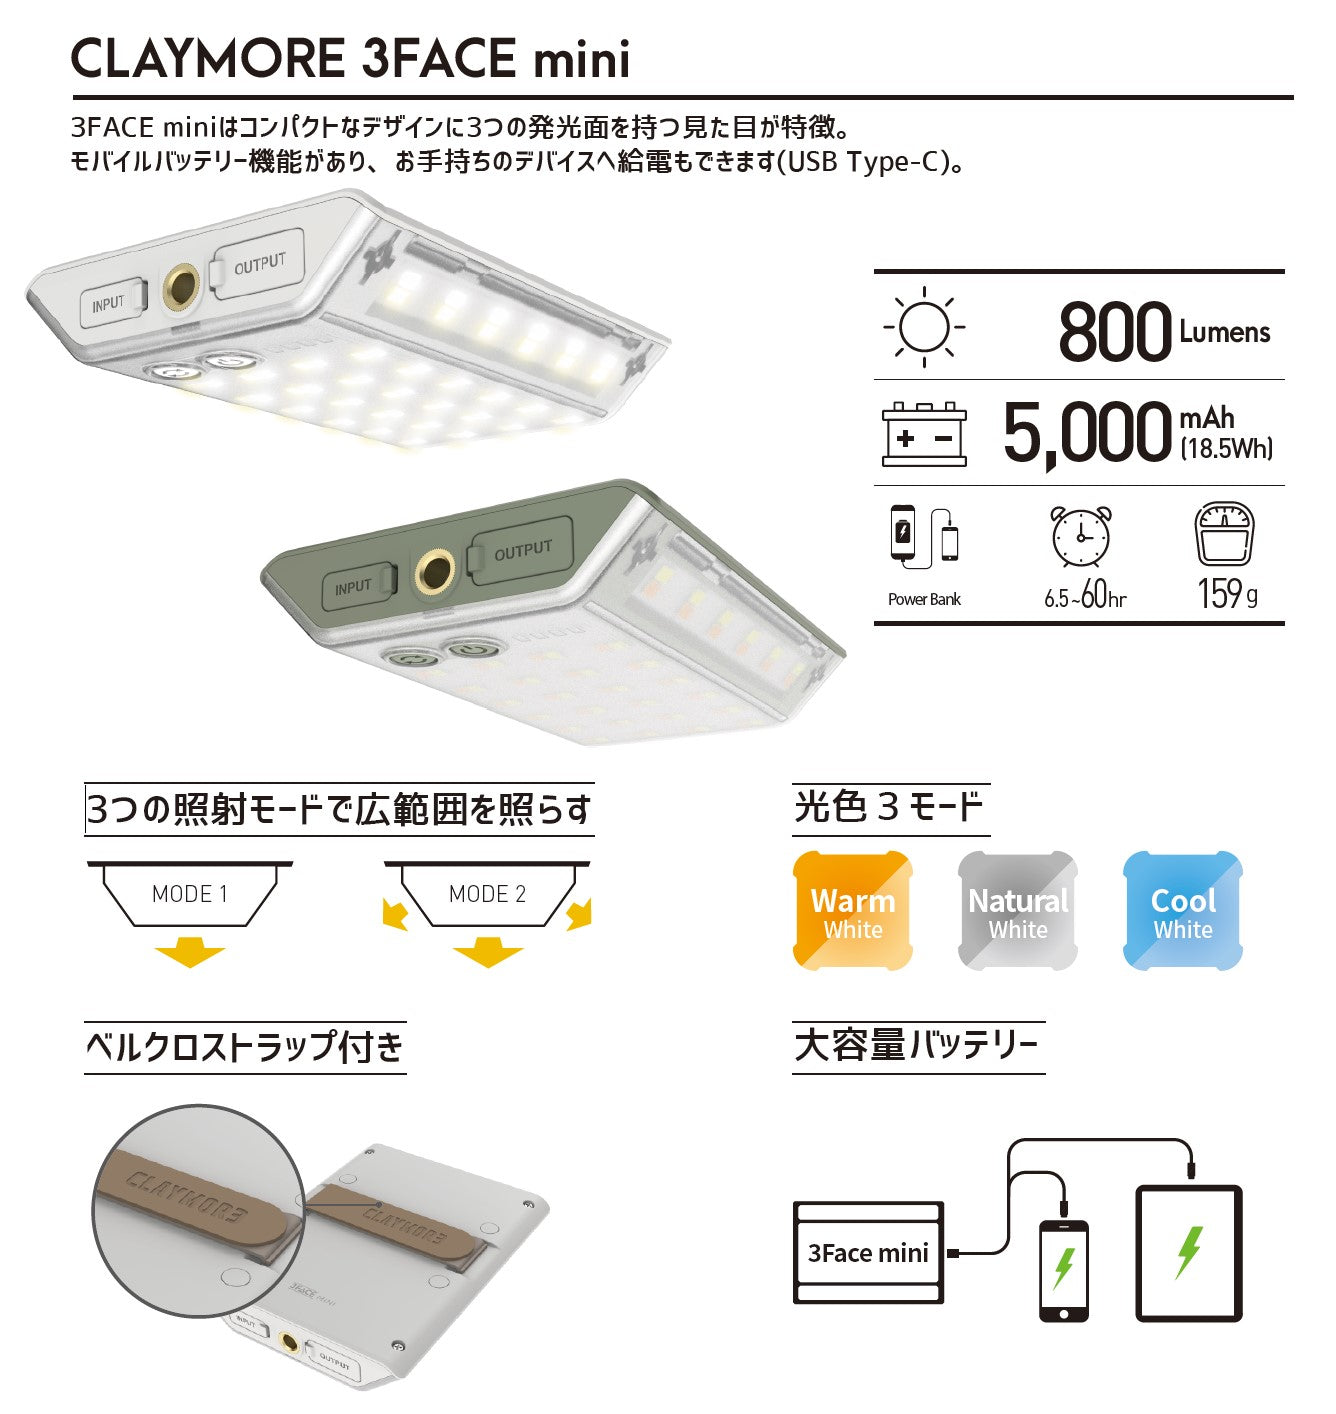 CLAYMORE 3FACE mini CLF-500